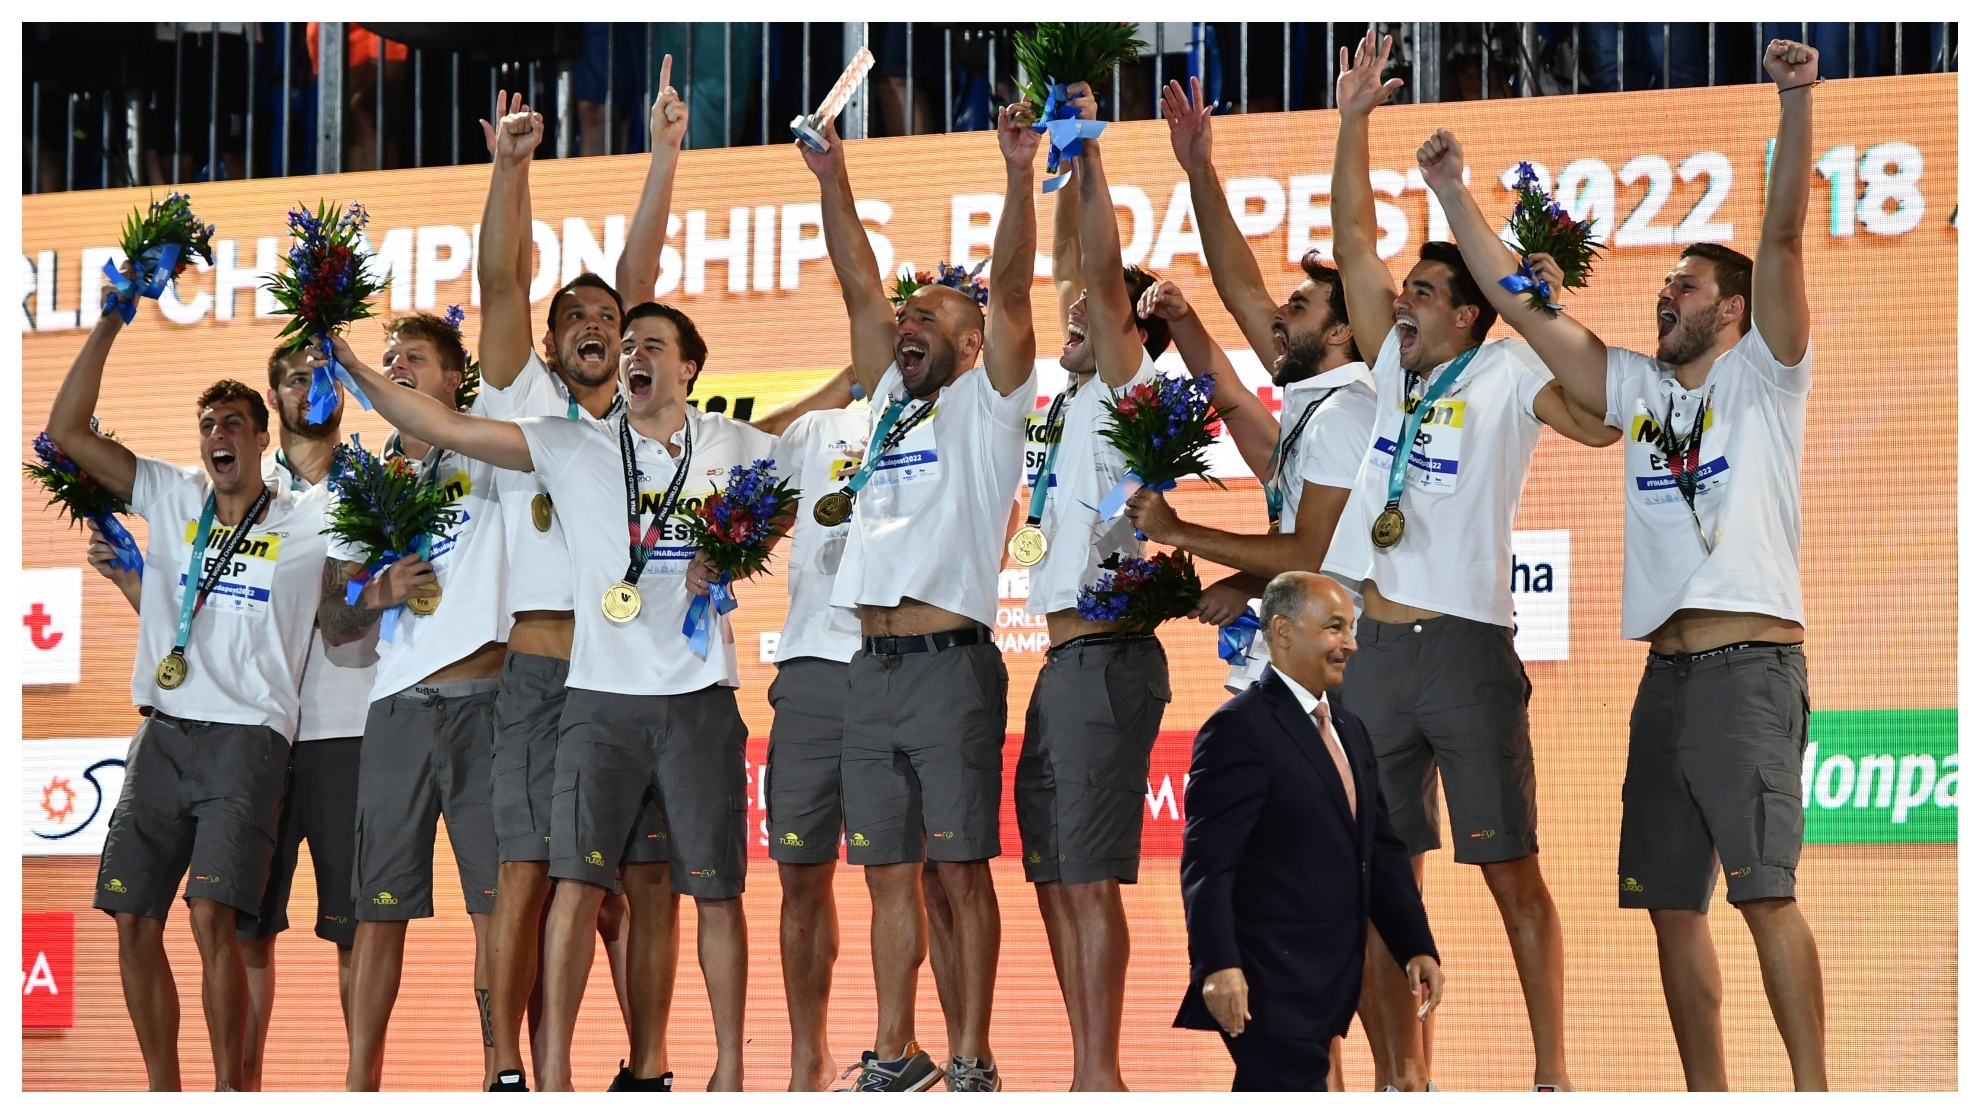 Lso jugadores españoles tras recibir sus medallas de oro